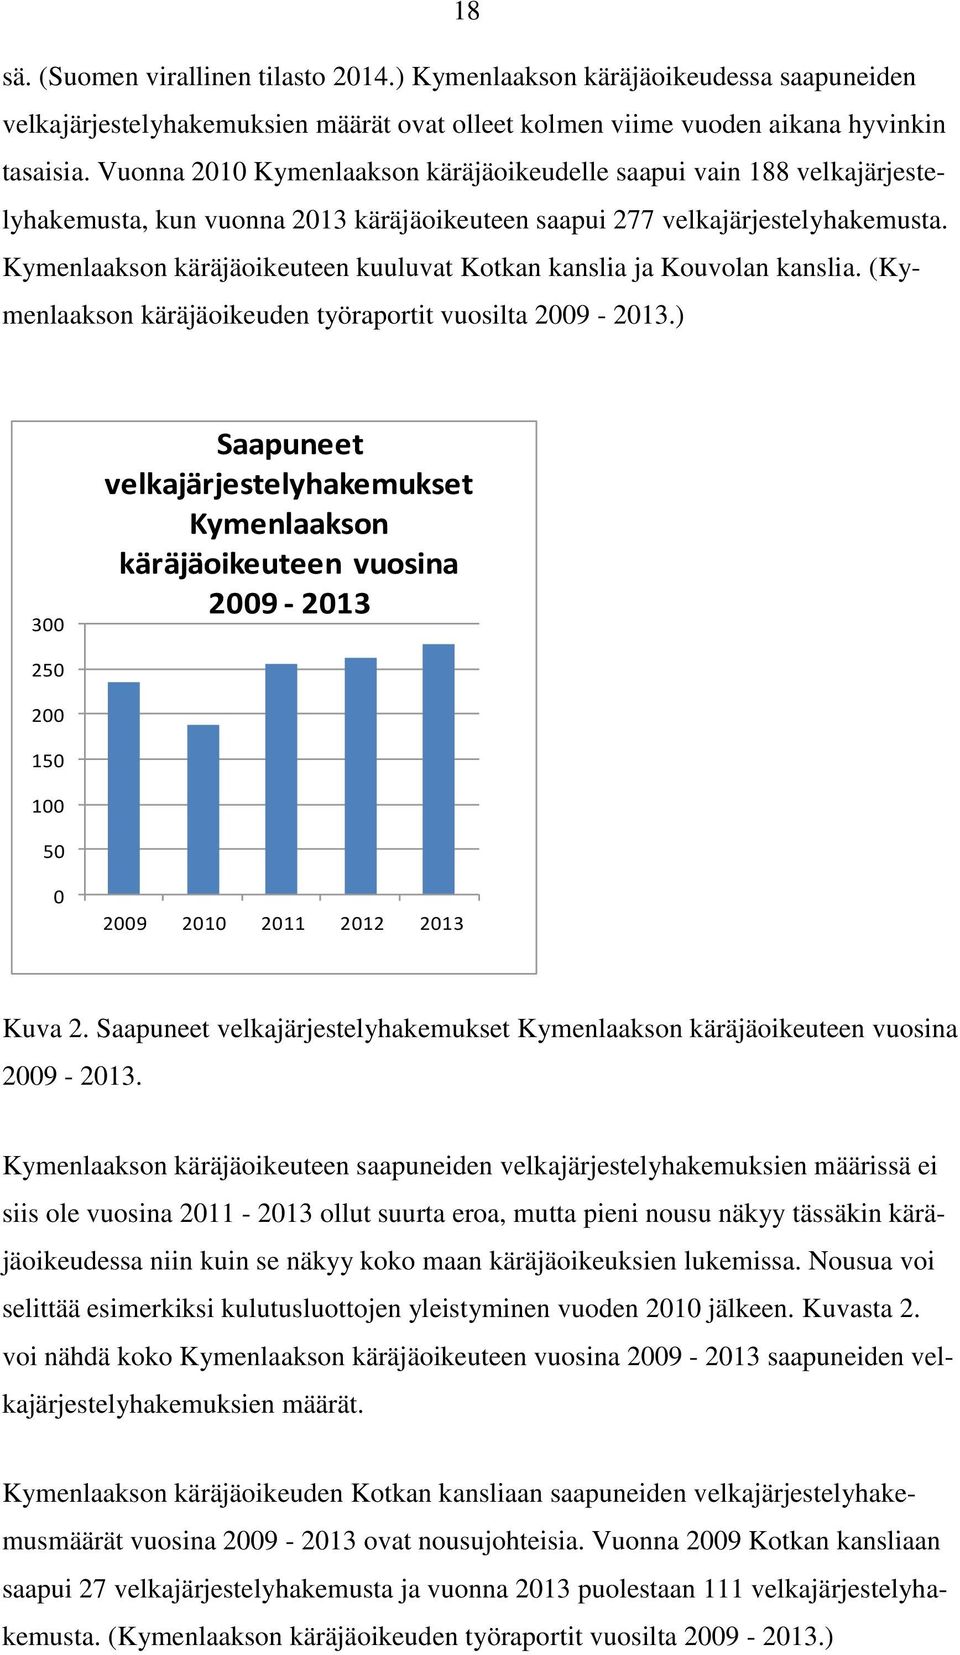 Kymenlaakson käräjäoikeuteen kuuluvat Kotkan kanslia ja Kouvolan kanslia. (Kymenlaakson käräjäoikeuden työraportit vuosilta 2009-2013.